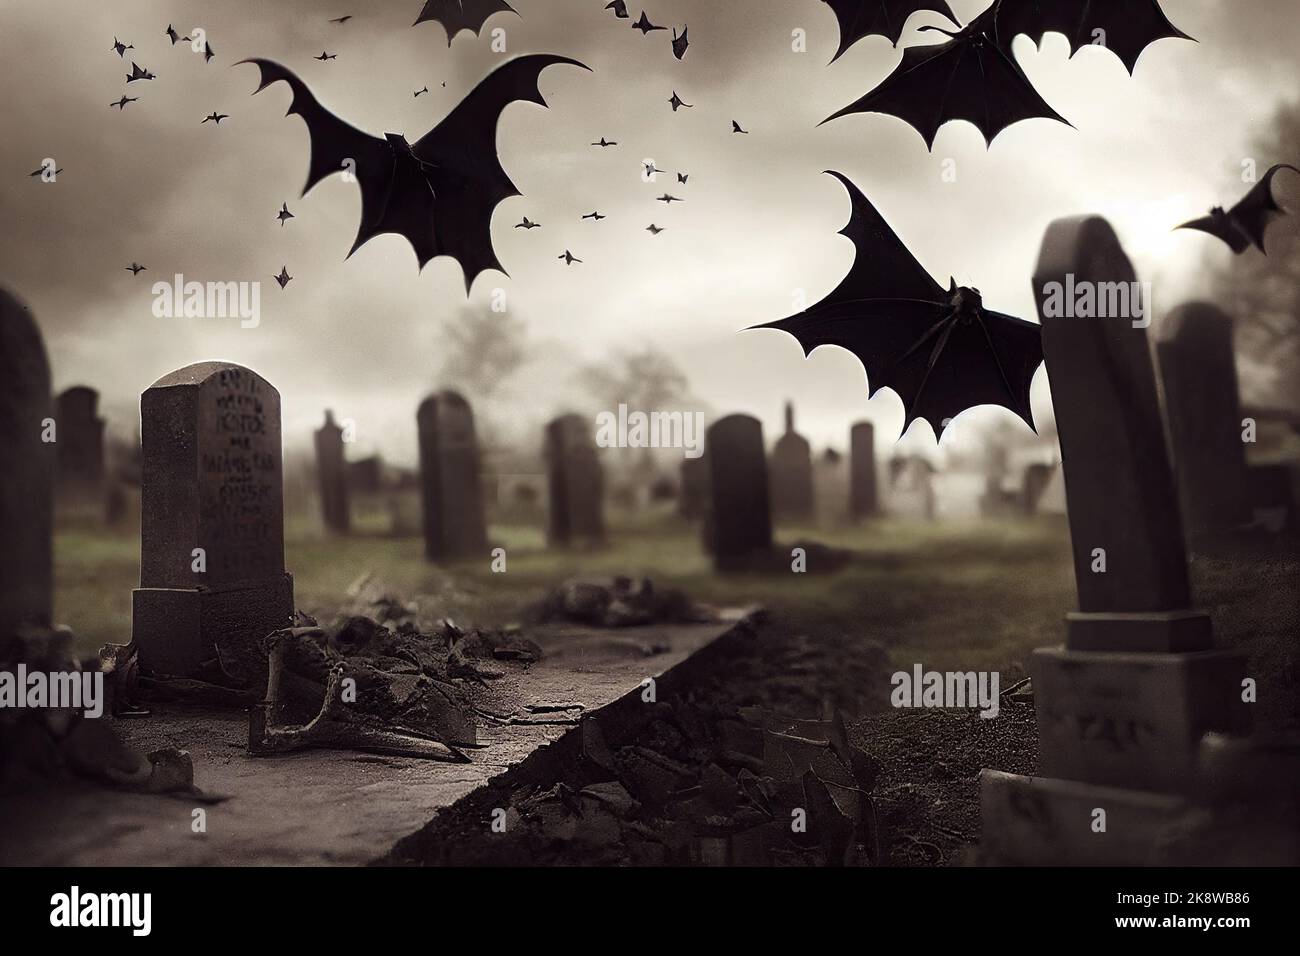 Un cimitero scuro sulla notte di Halloween è illuminato dalla luna piena e vampiri stanno volando. Illustrazione 3D. Tema vintage in bianco e nero Foto Stock